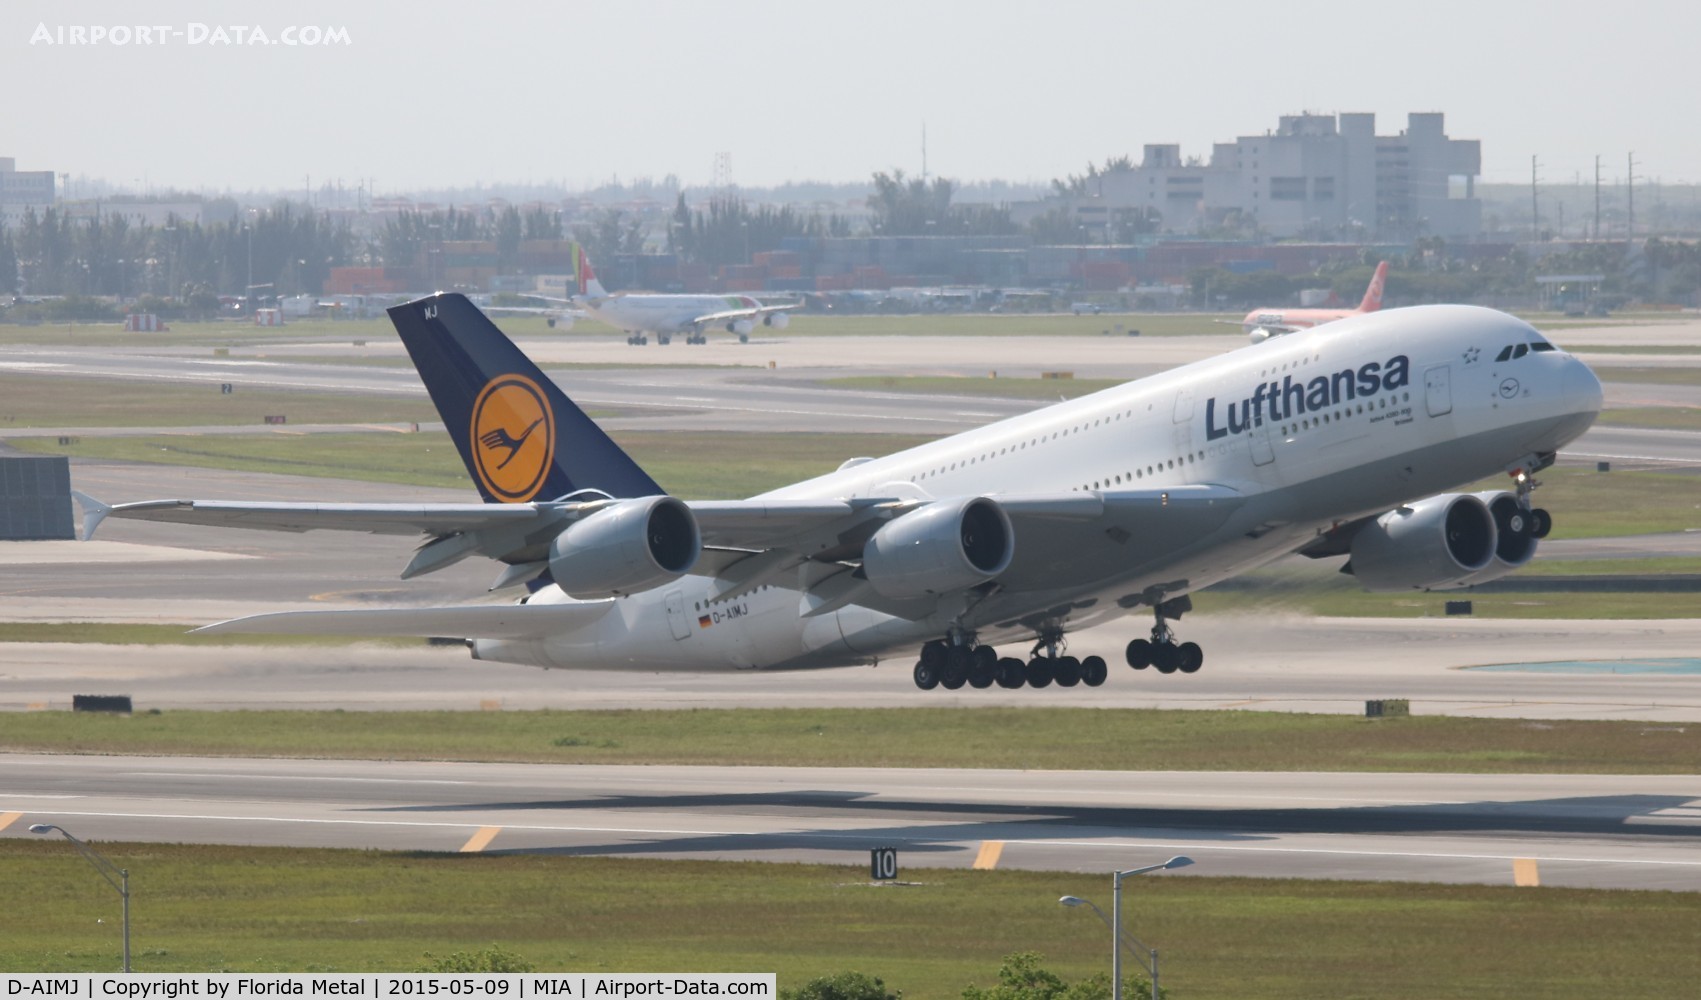 D-AIMJ, 2011 Airbus A380-841 C/N 073, Lufthansa